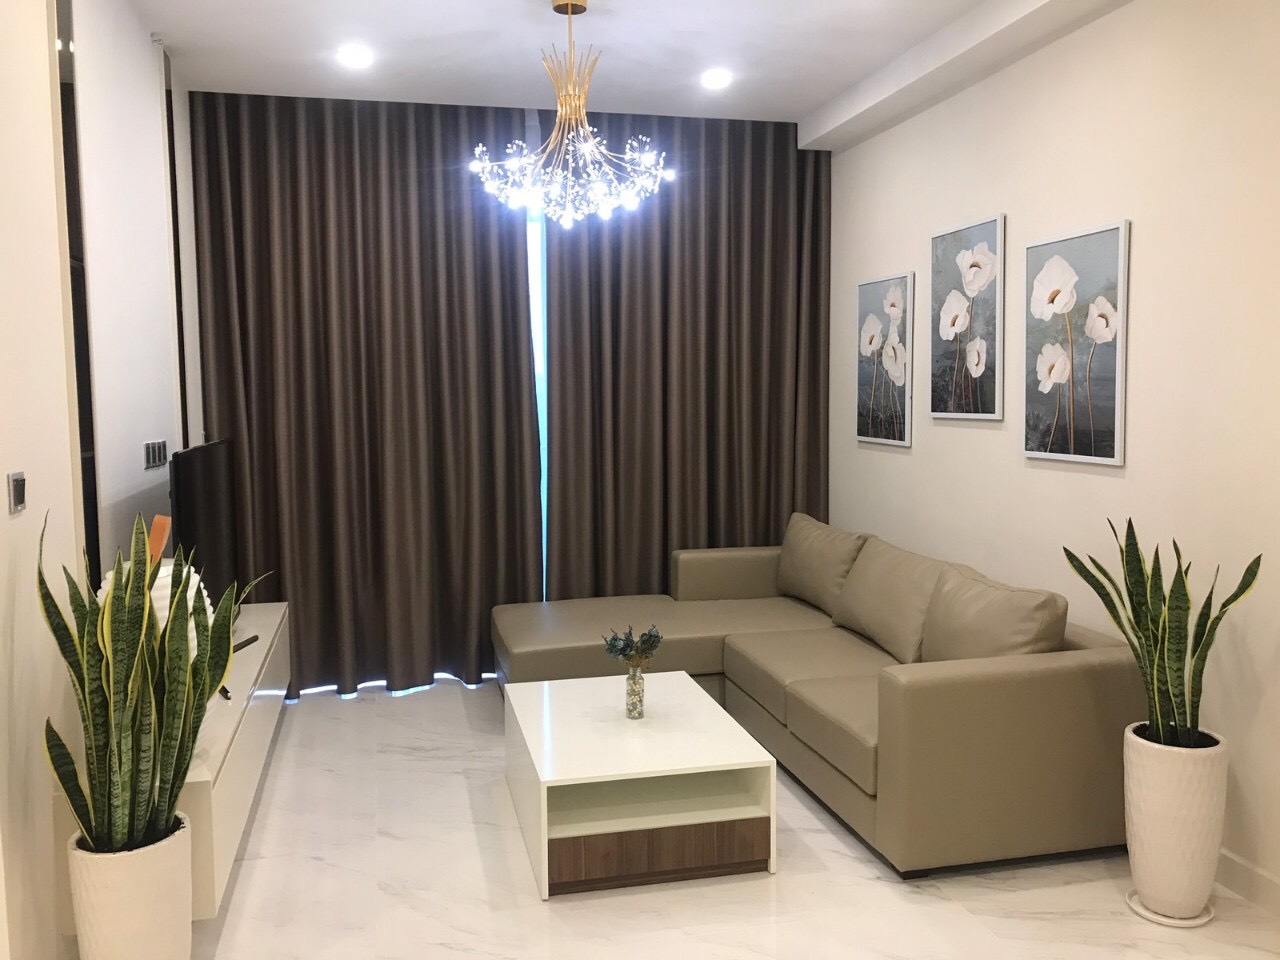 Cho thuê căn hộ chung cư tại dự án Hưng Phúc Happy Residence Phú Mỹ Hưng, LH 0903 668 695 (Ms.Giang)